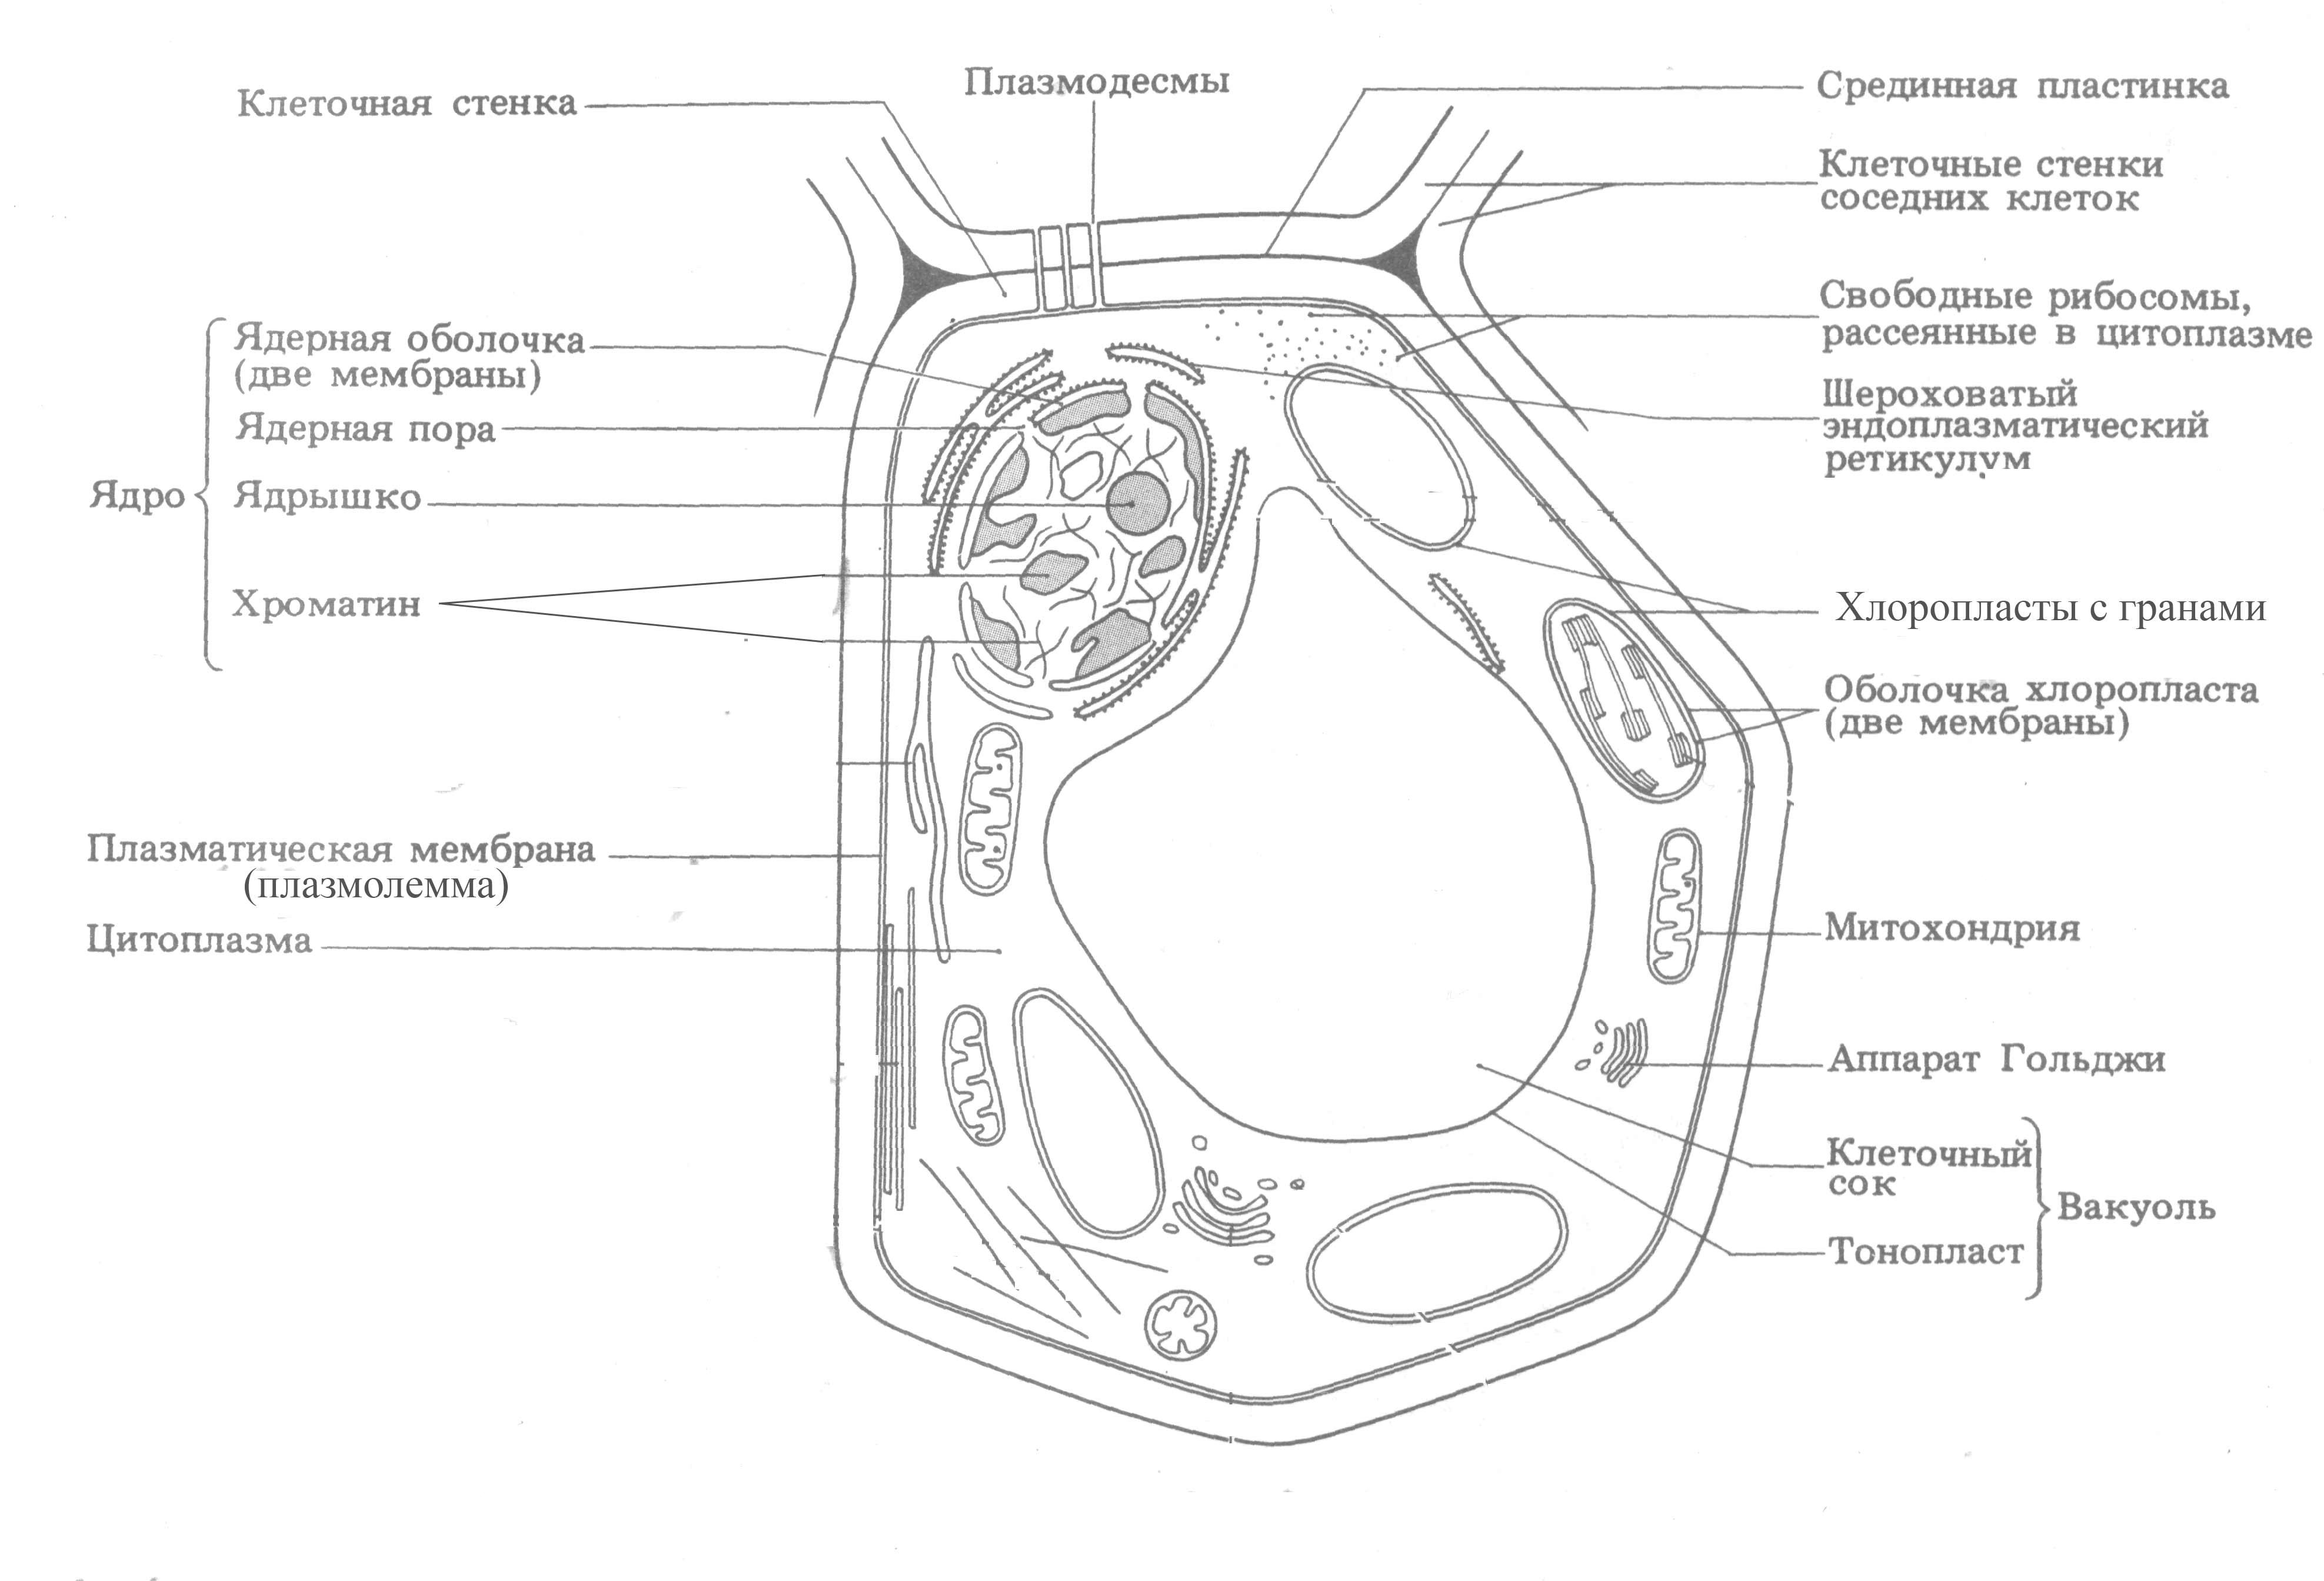 Строение растительной клетчатки. Органоиды растительной клетки схема. Органоиды растительной клетки схема строения. Схема строения растительной клетки рисунок с подписями. Органеллы растительной клетки схема.